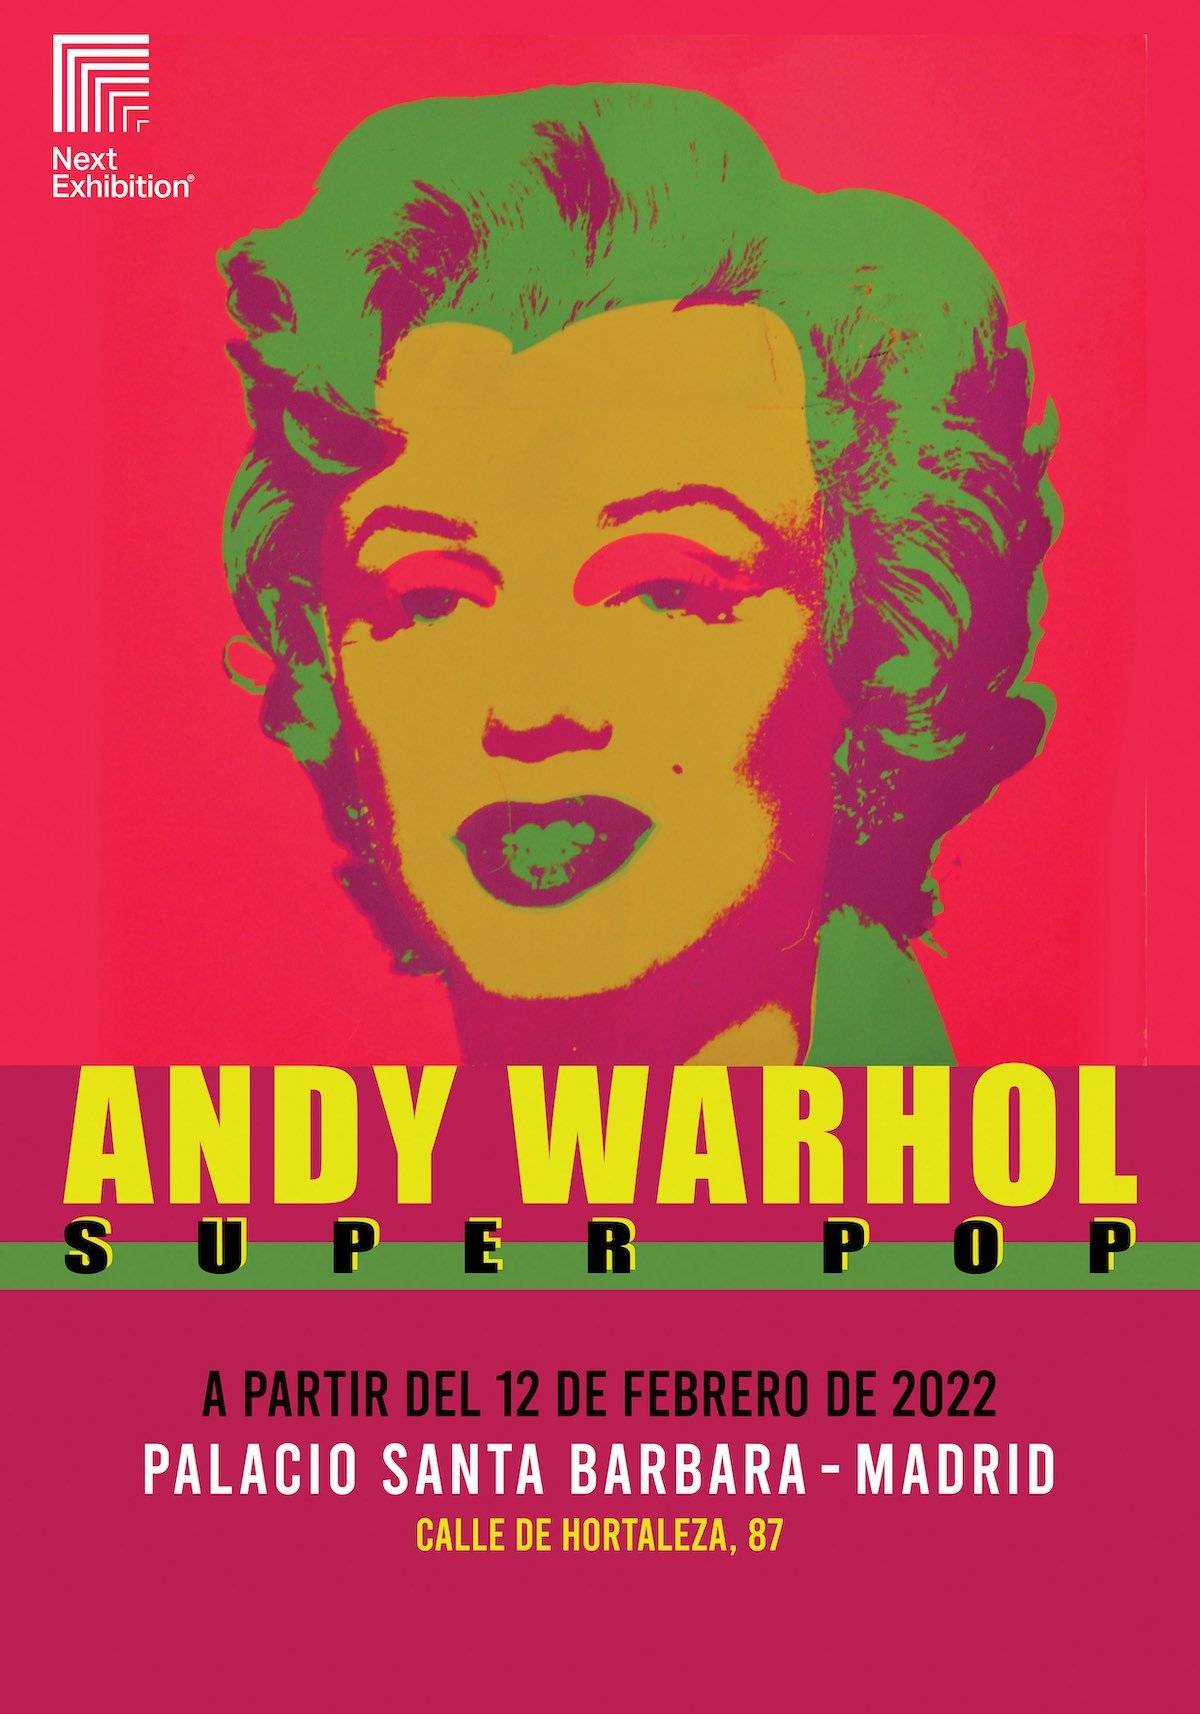 Poster exposición "Andy Warhol Super Pop" en Madrid